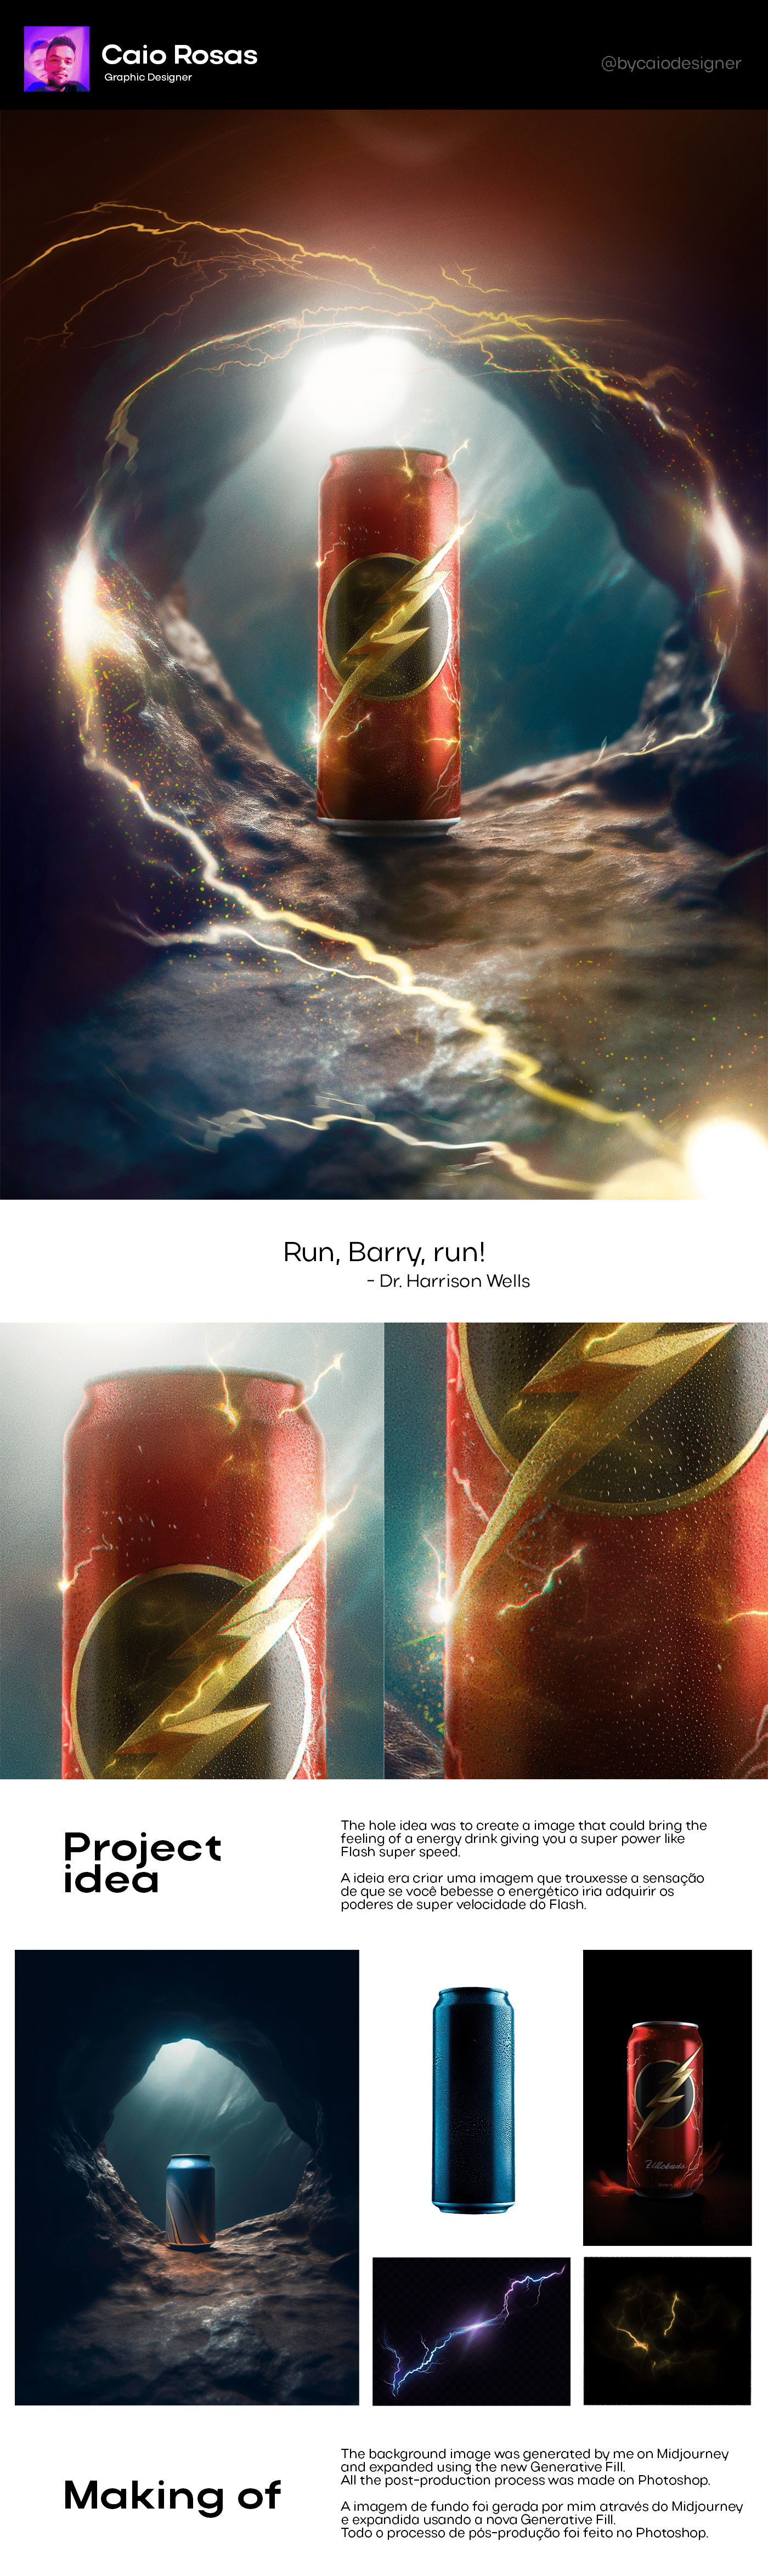 The Flash Dc Comics SuperHero energy drink designer batman post-production retouch